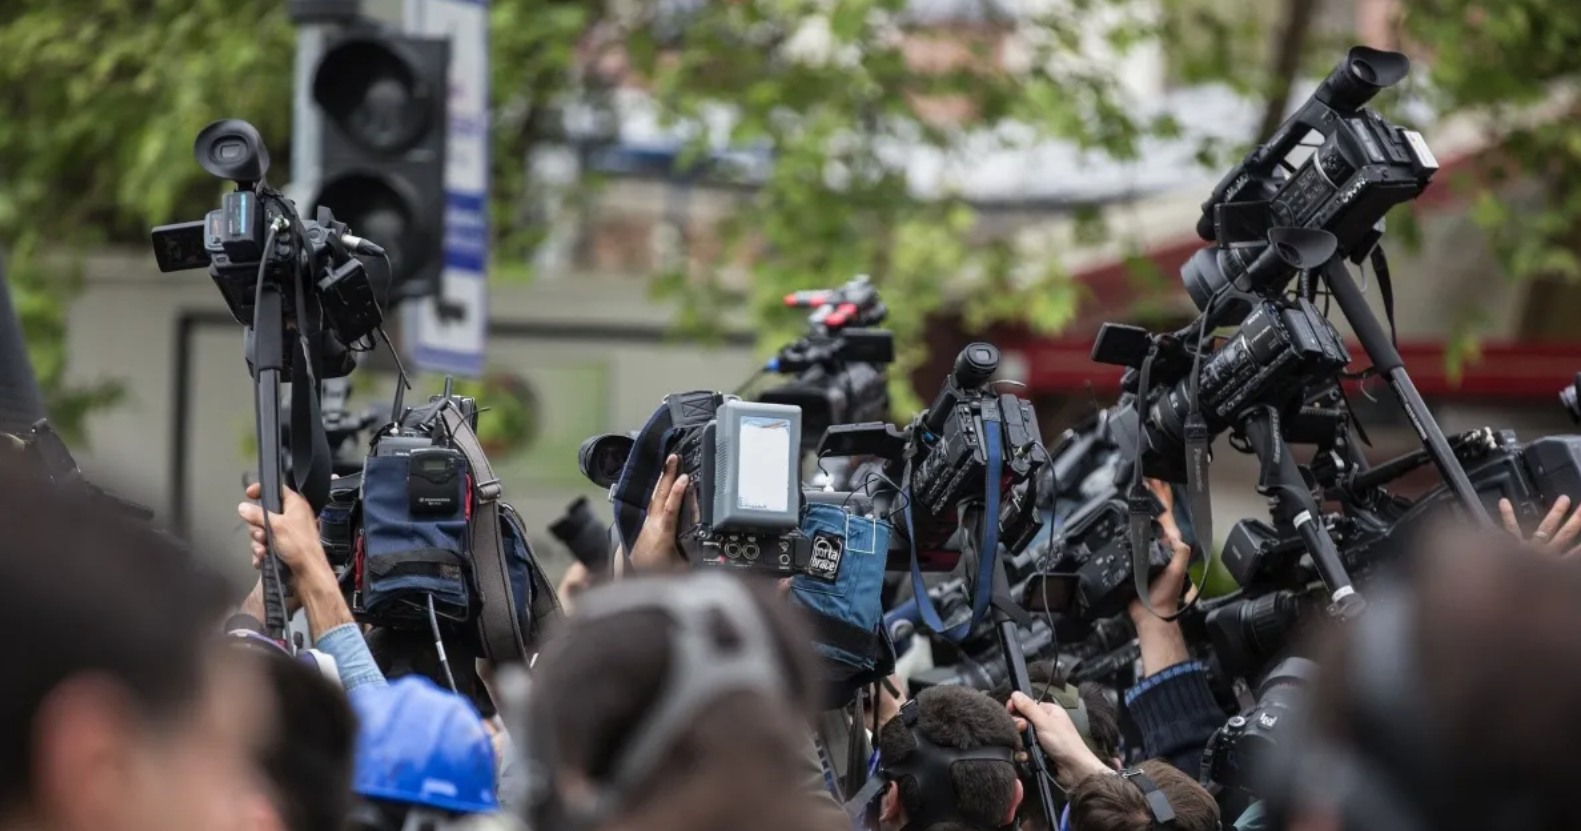 Sntp exige garantías para periodistas y medios en la cobertura de la campaña electoral en Venezuela